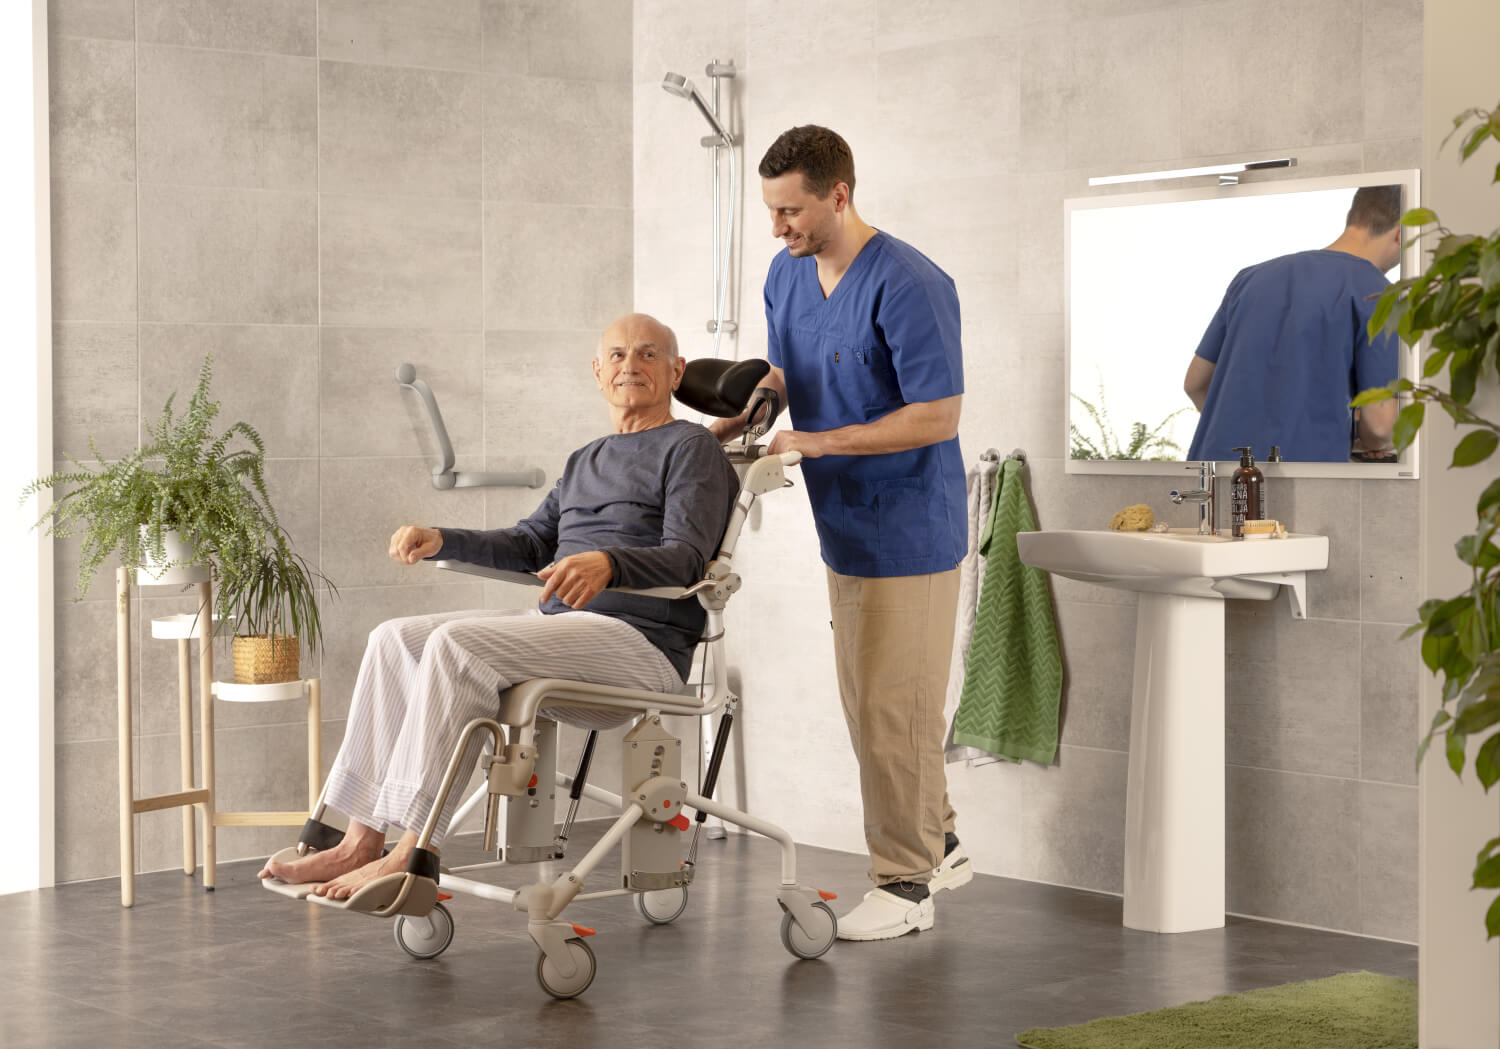 Swift mobile tilt banyo tuvalet sandalyesi . Yaşlı bir adam sandalyeye oturmuş,, erkek bir hasta bakıcı arkasında onu. itiyor. Banyodalar.